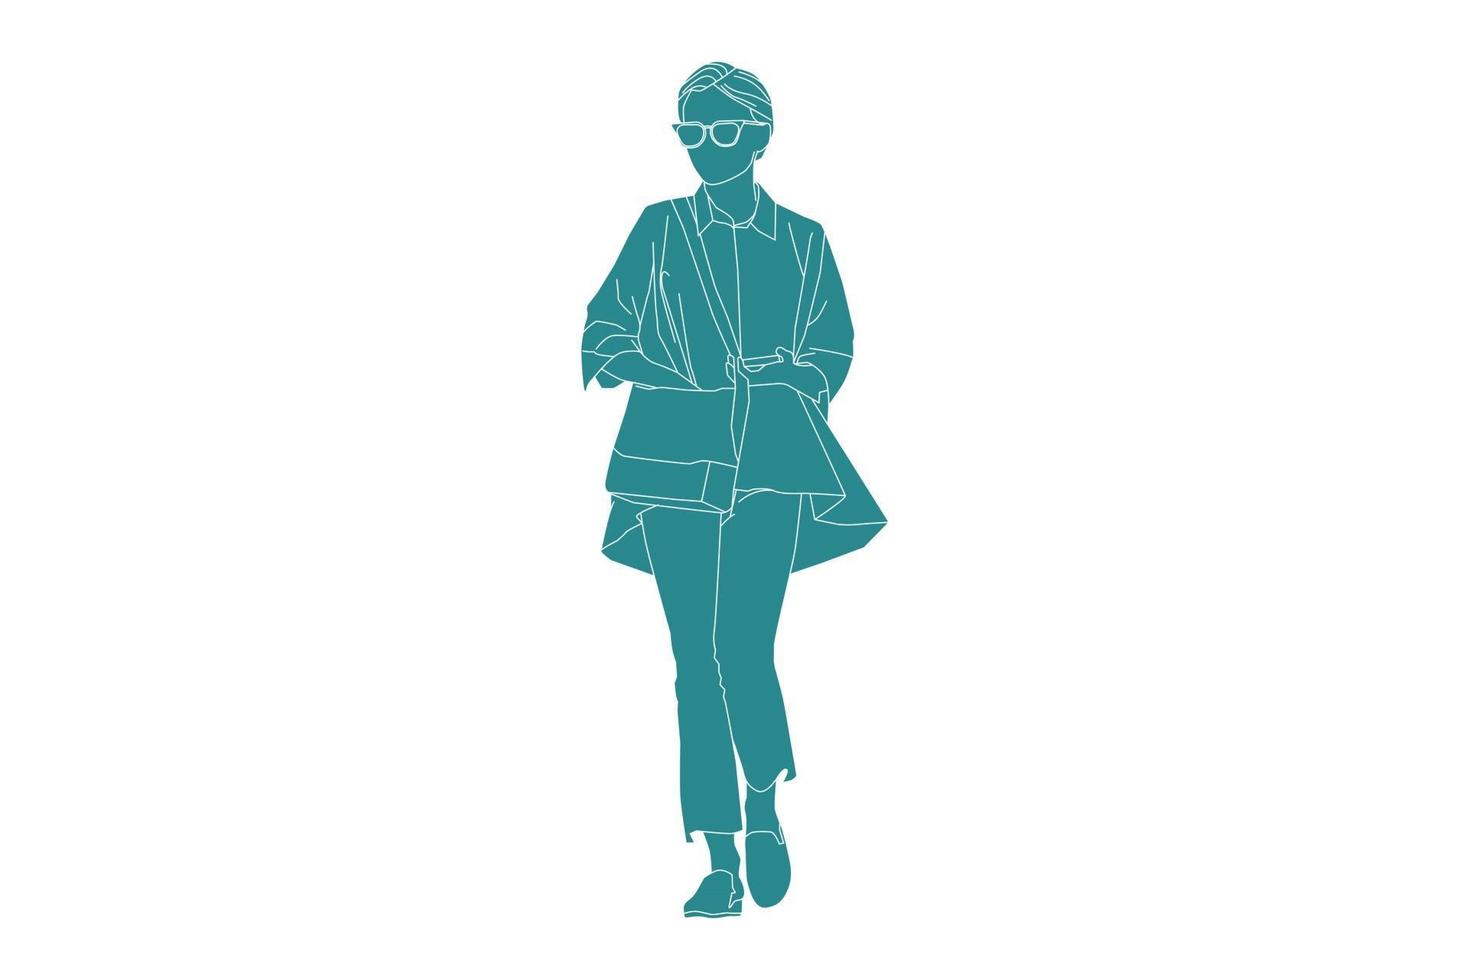 vectorillustratie van casual vrouw lopen op de zijweg, vlakke stijl met outline vector